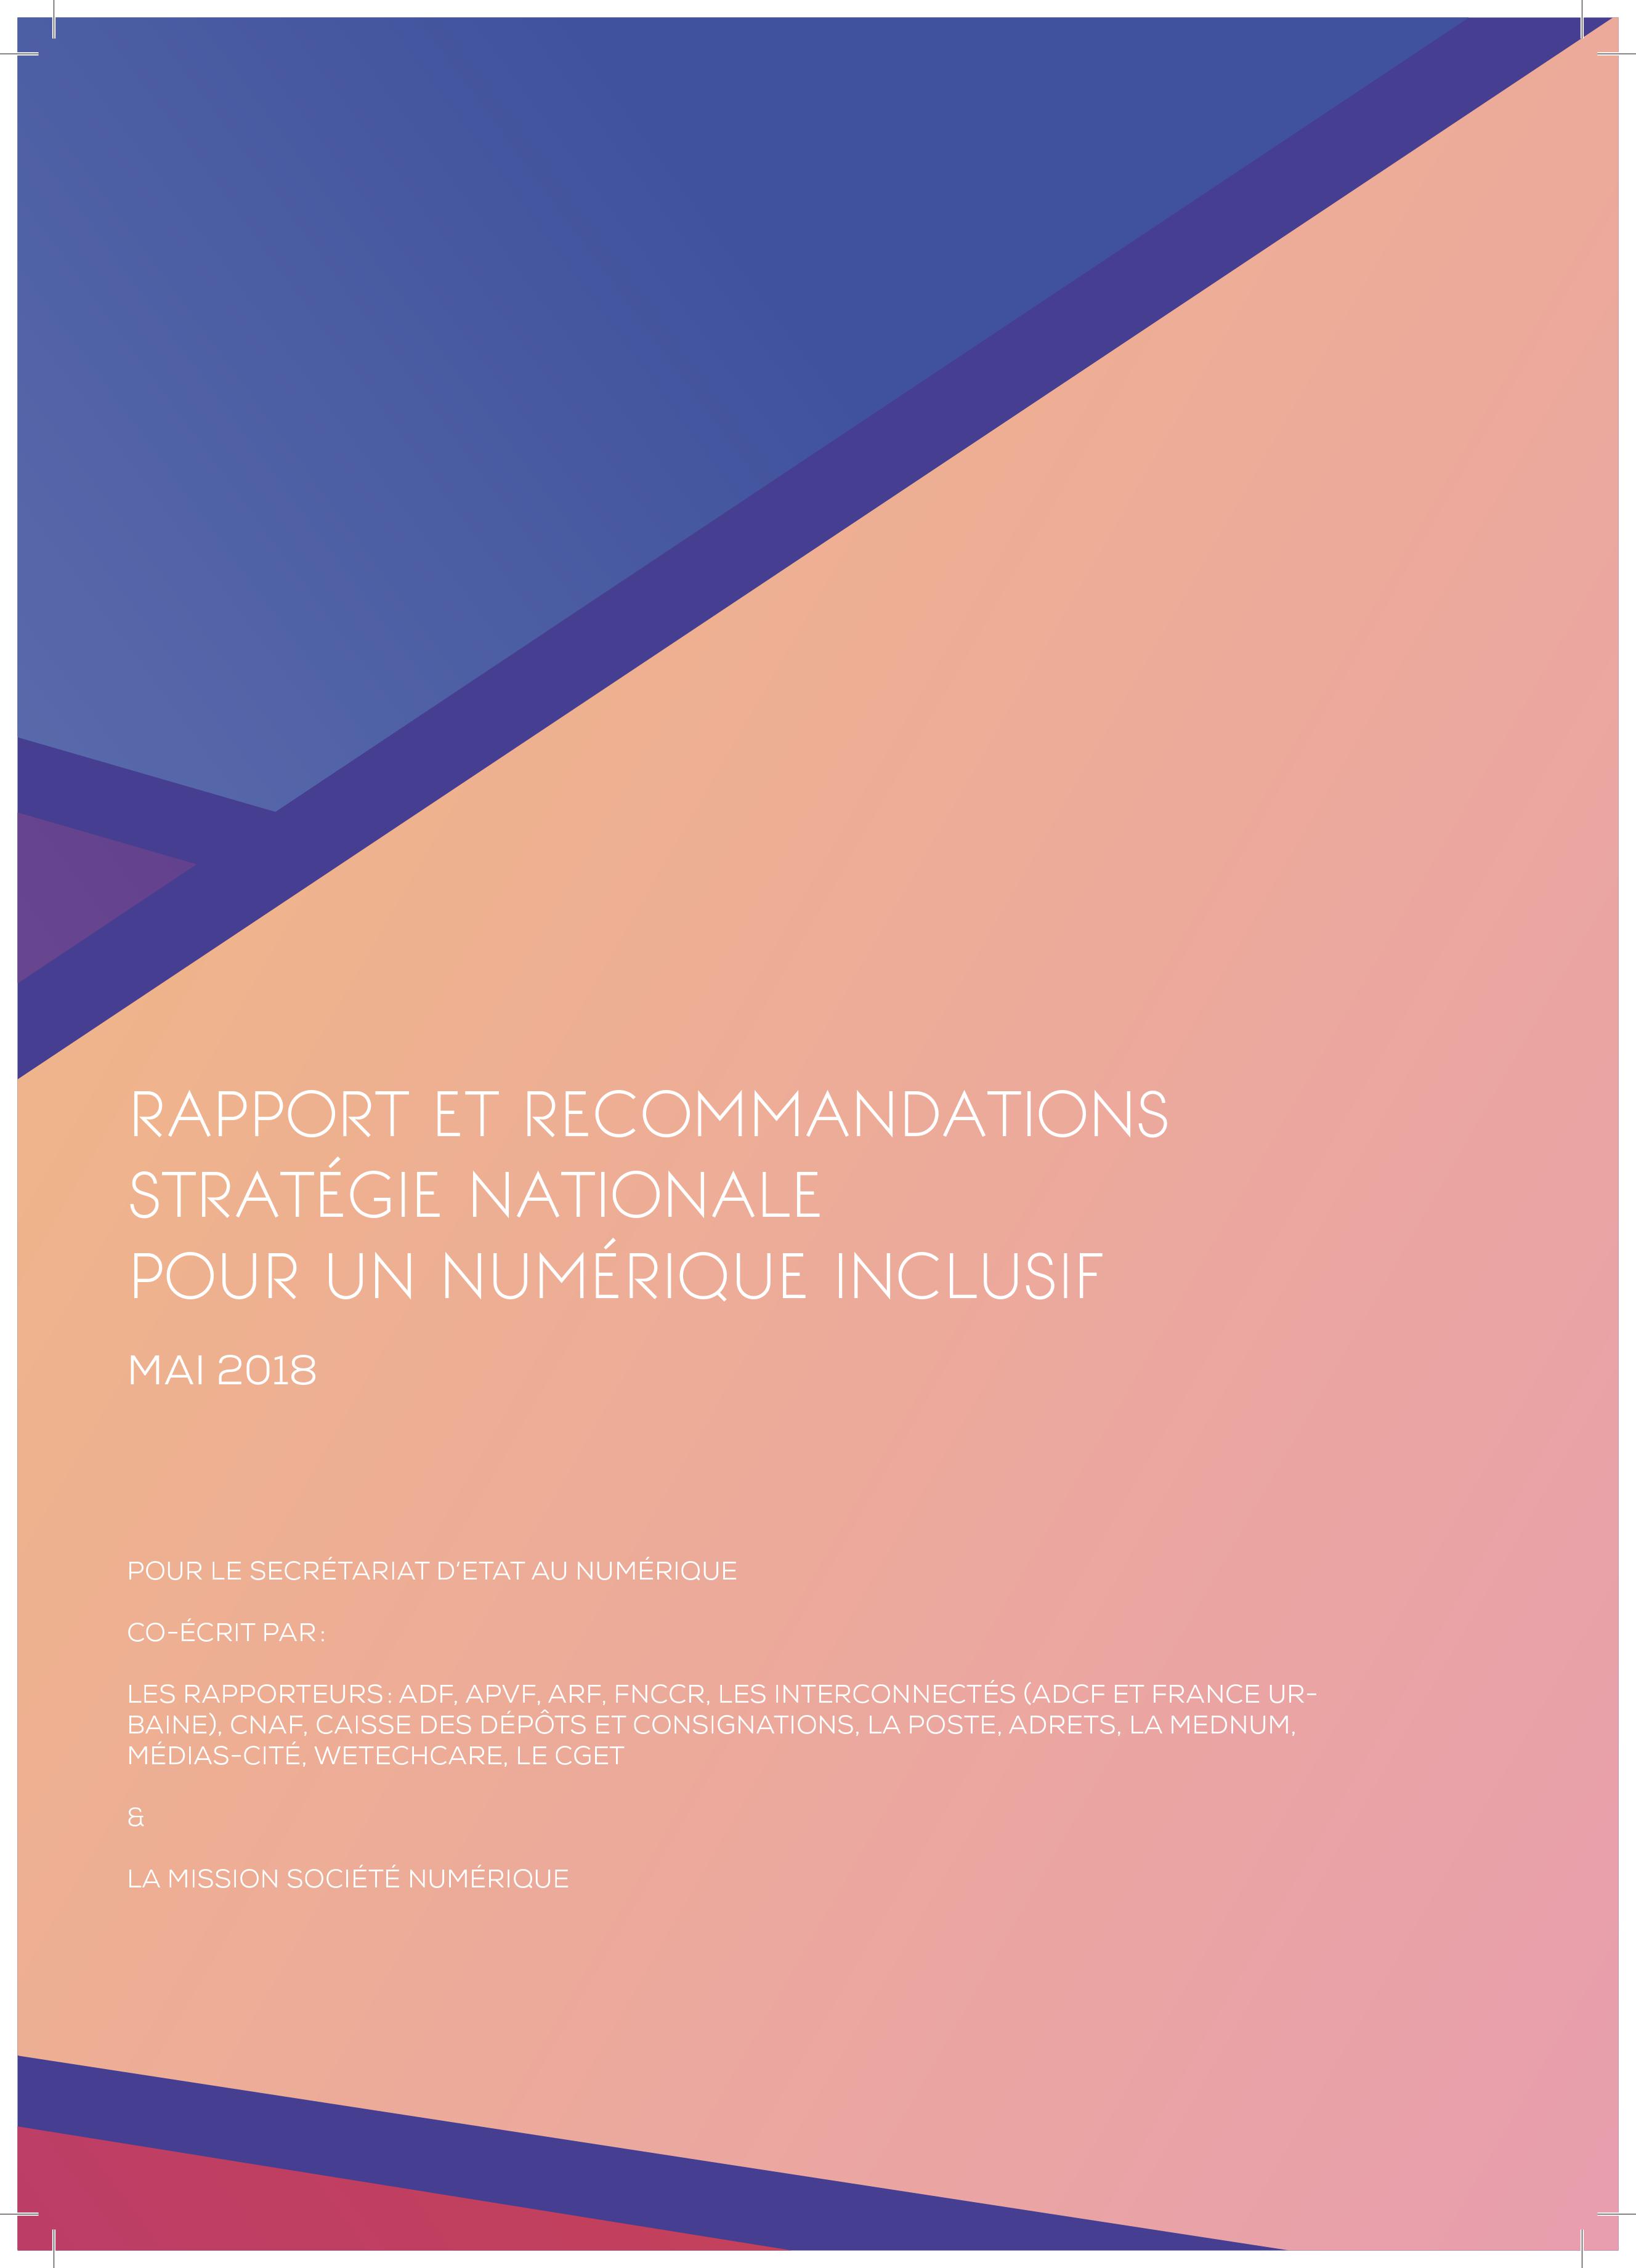 Rapport et Recommandations - Stratégie nationale pour un numérique inclusif